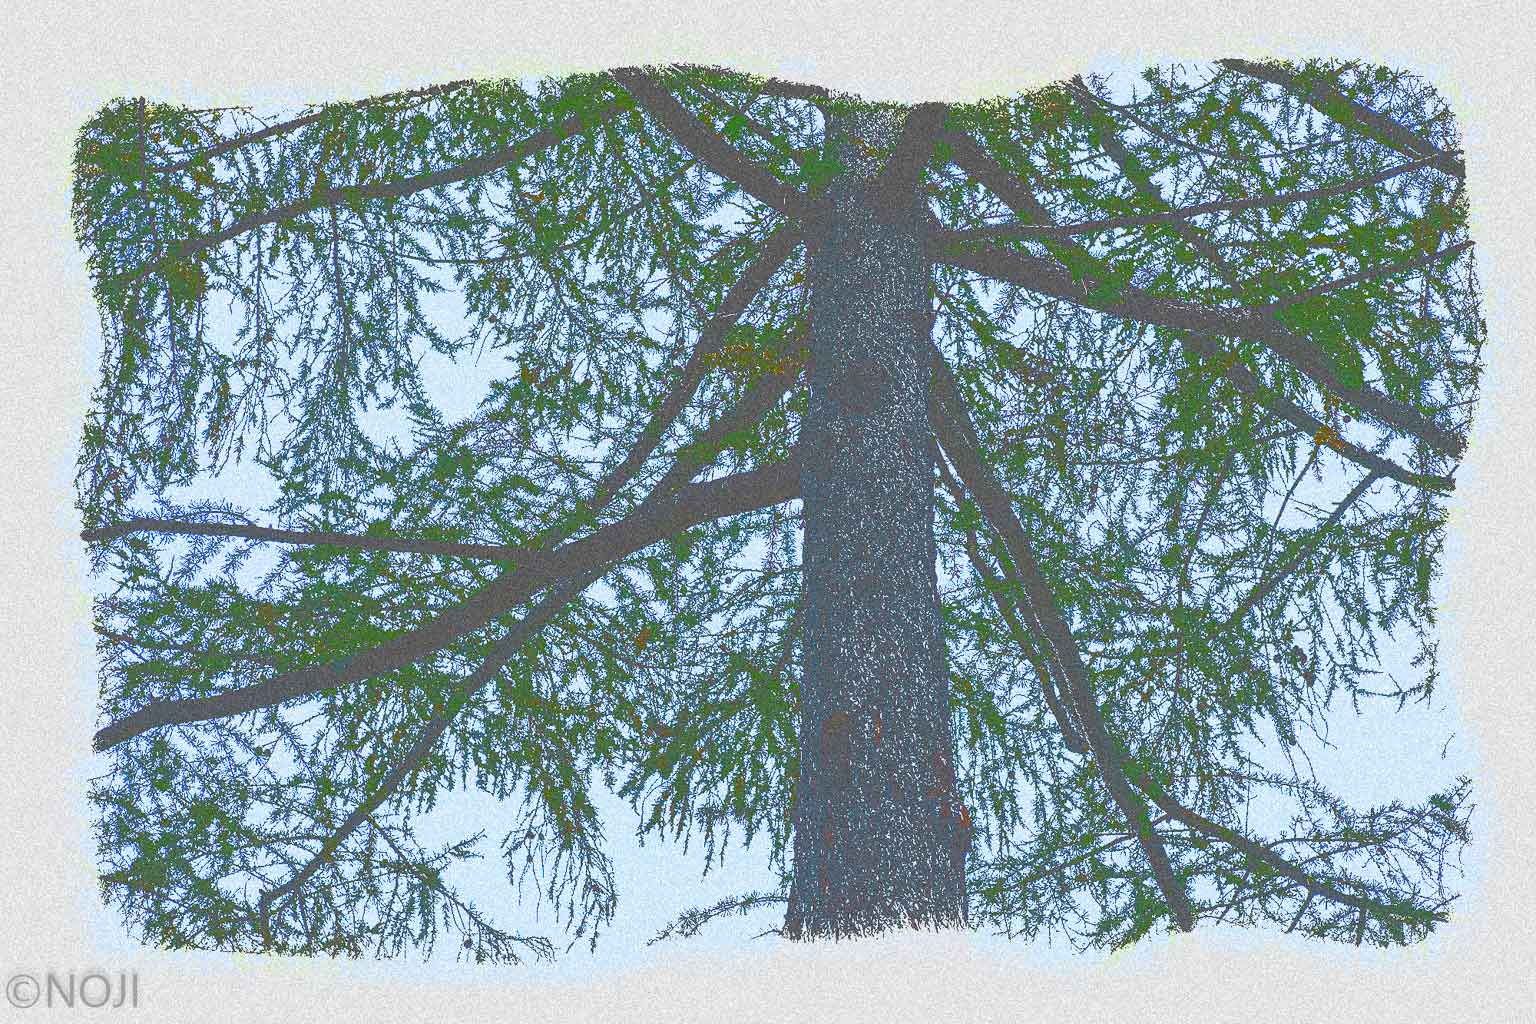 xtz0006 the Pine Tree